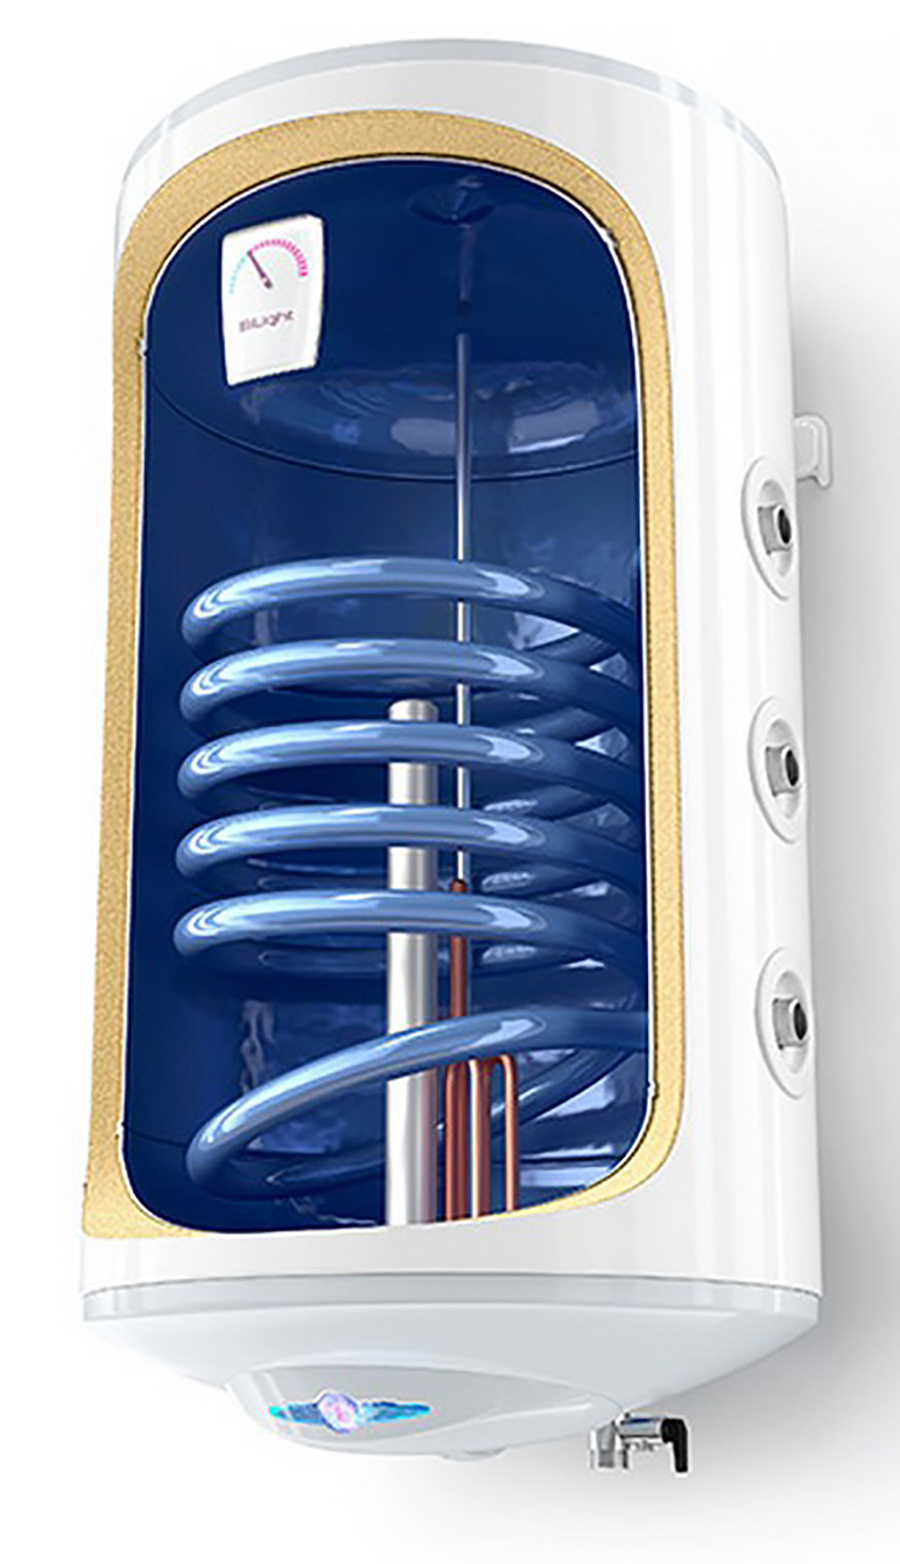 Комбинированный водонагреватель Tesy GCV6SL 804430 B11 TSRP в интернет-магазине, главное фото